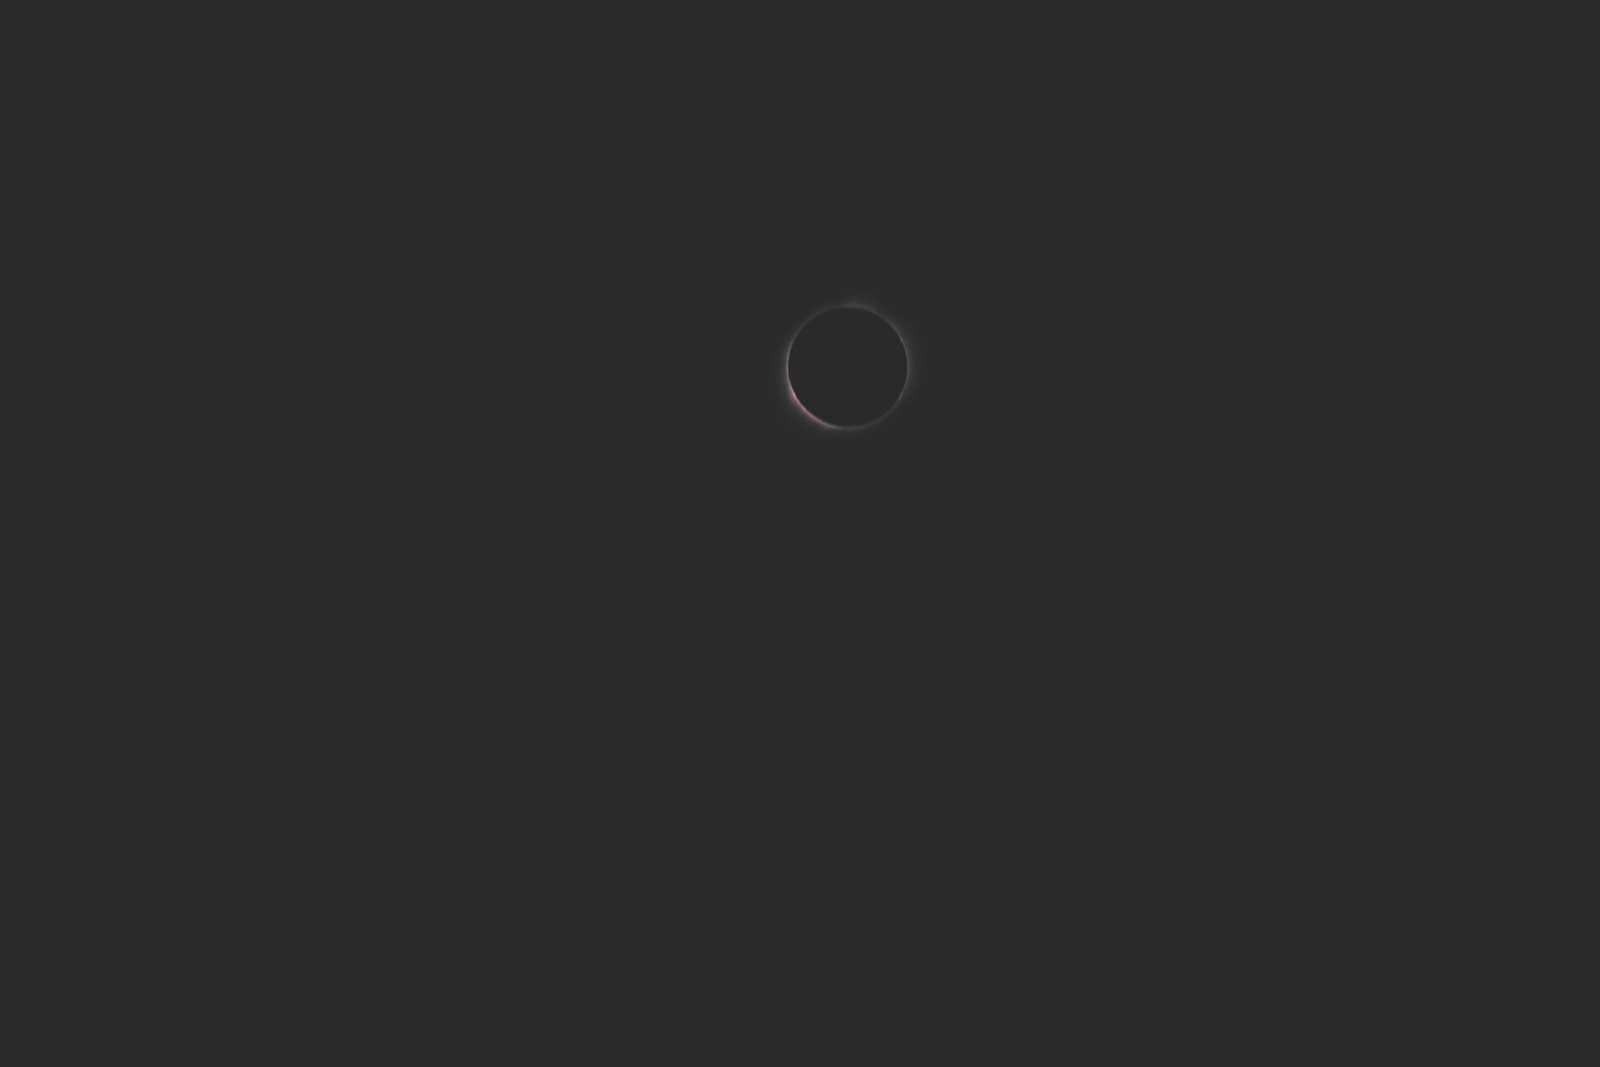 Eclipse2017-blog-0412.jpg